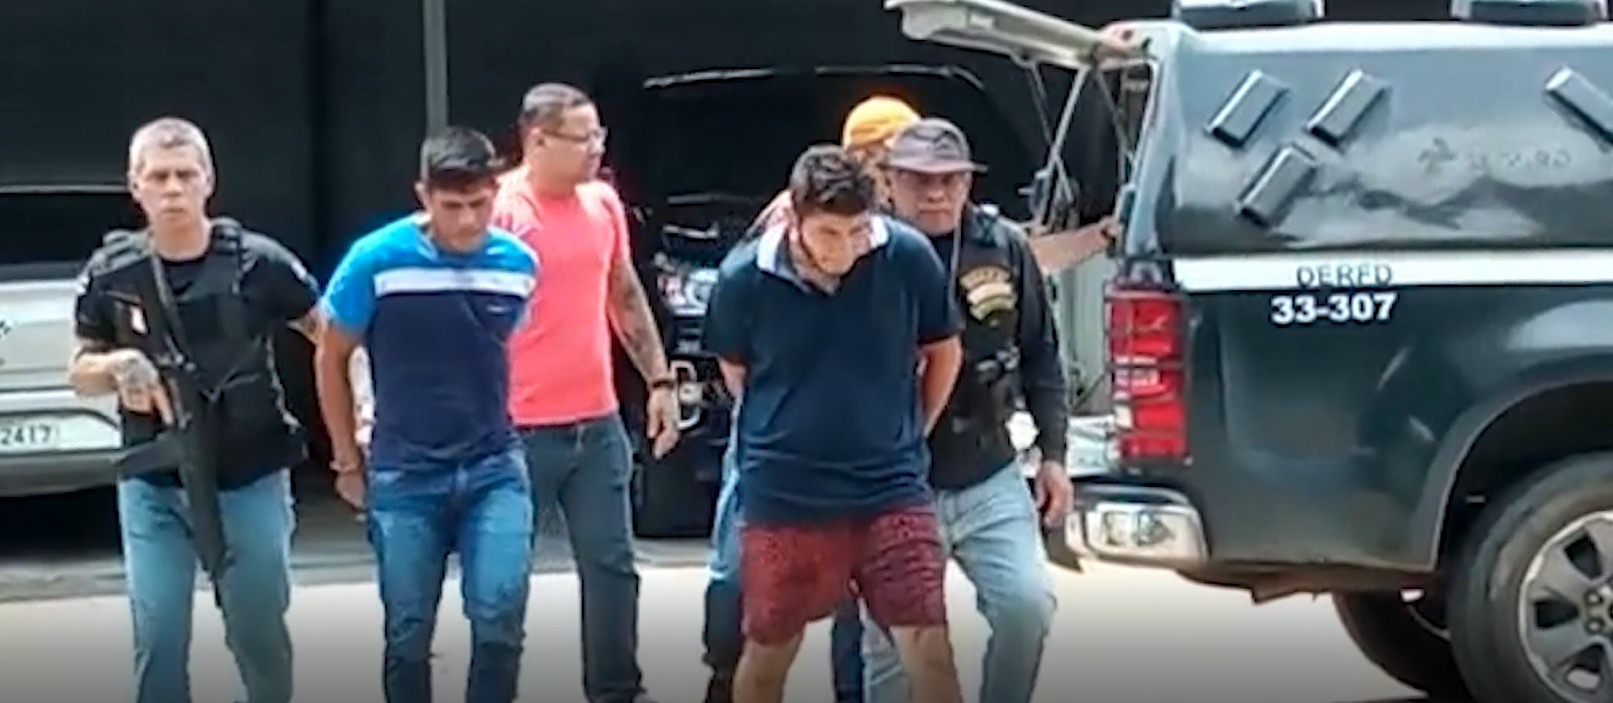 Dupla é presa suspeita de matar sargento da PM em Manaus - Foto: Reprodução/TV Norte